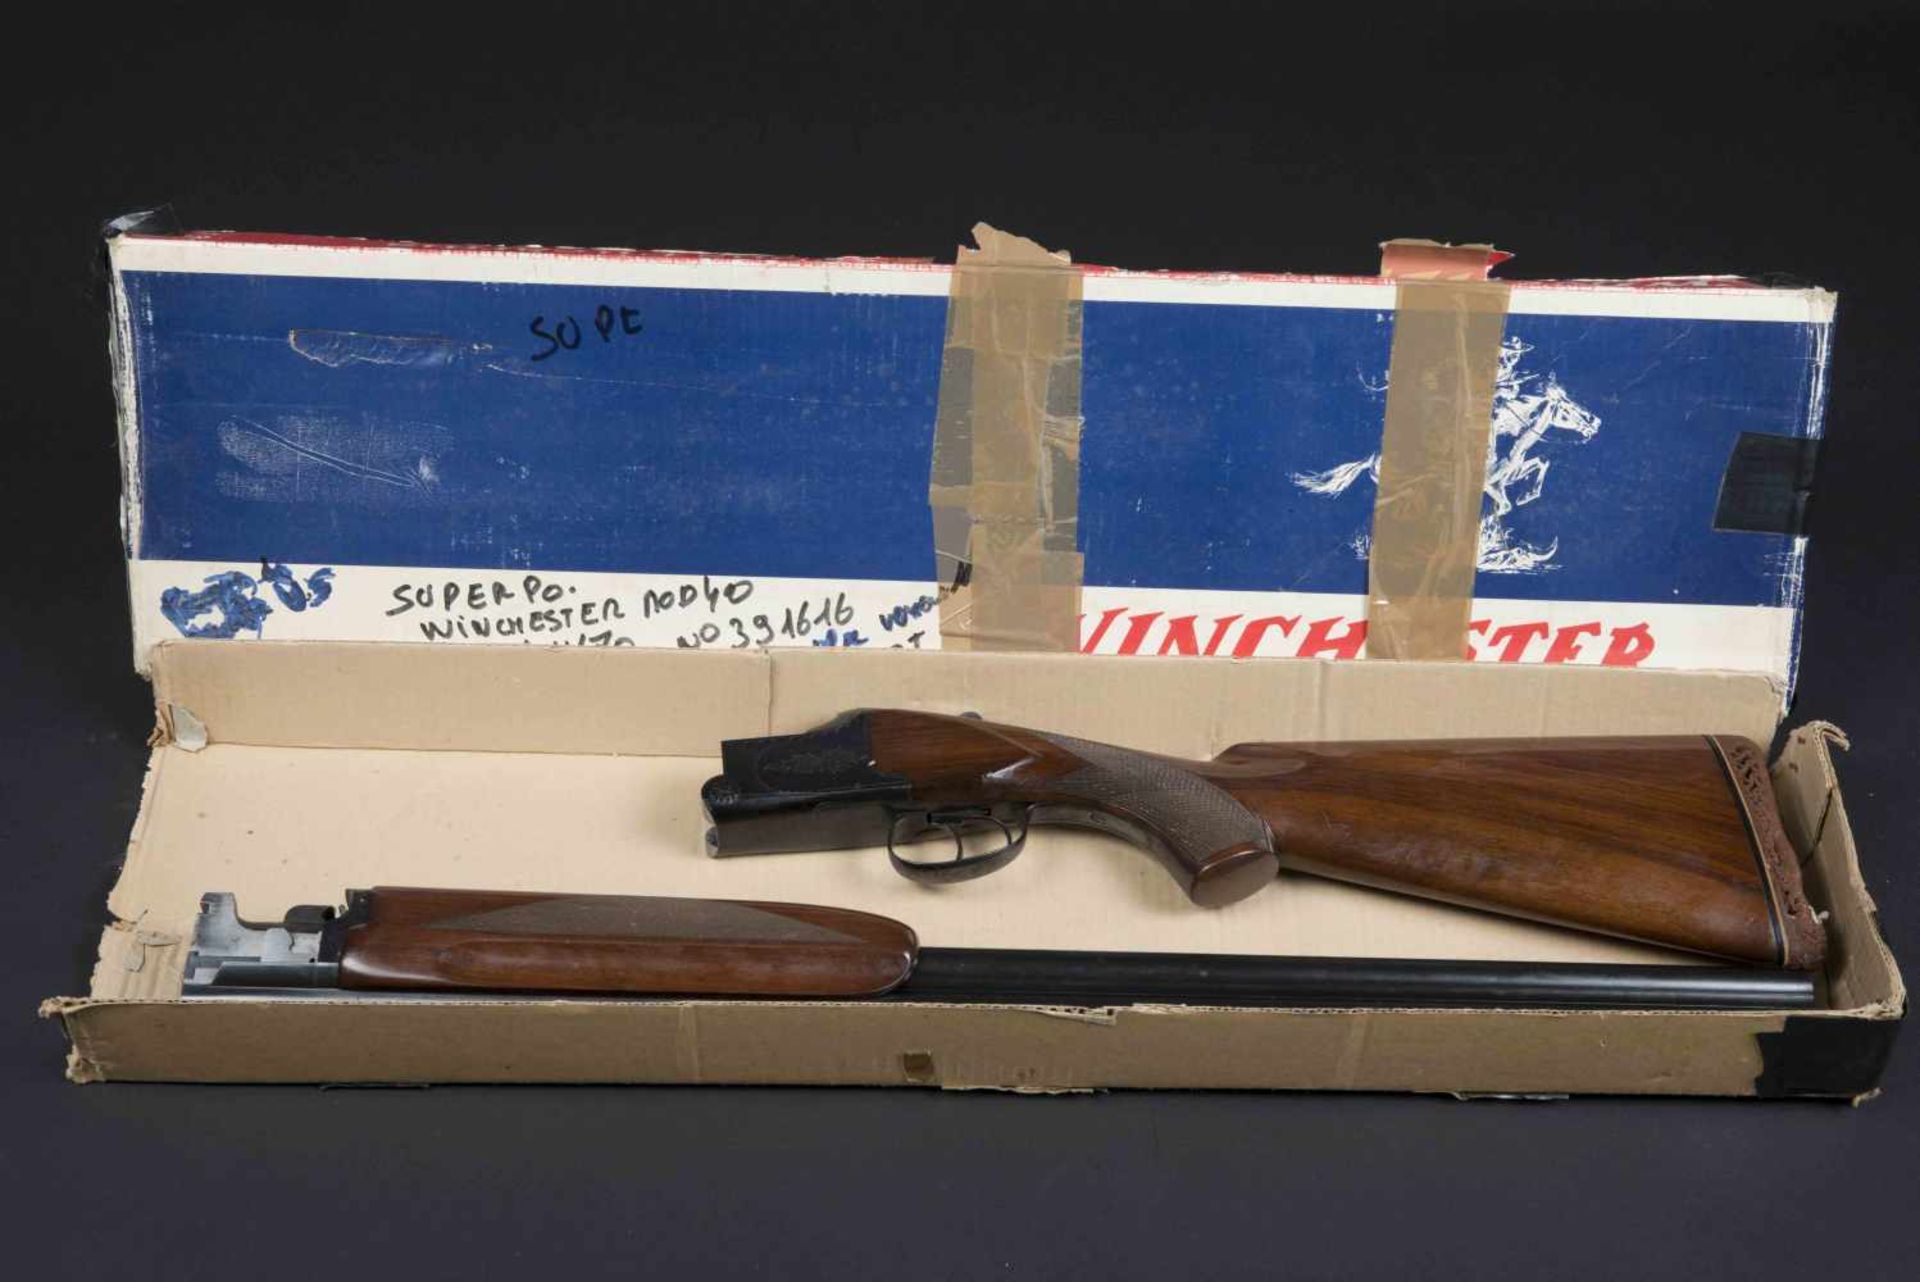 Fusil superposé Winchester Mod 40, catégorie C Calibre 12/70, numéro 391616. Certificat du Banc d'